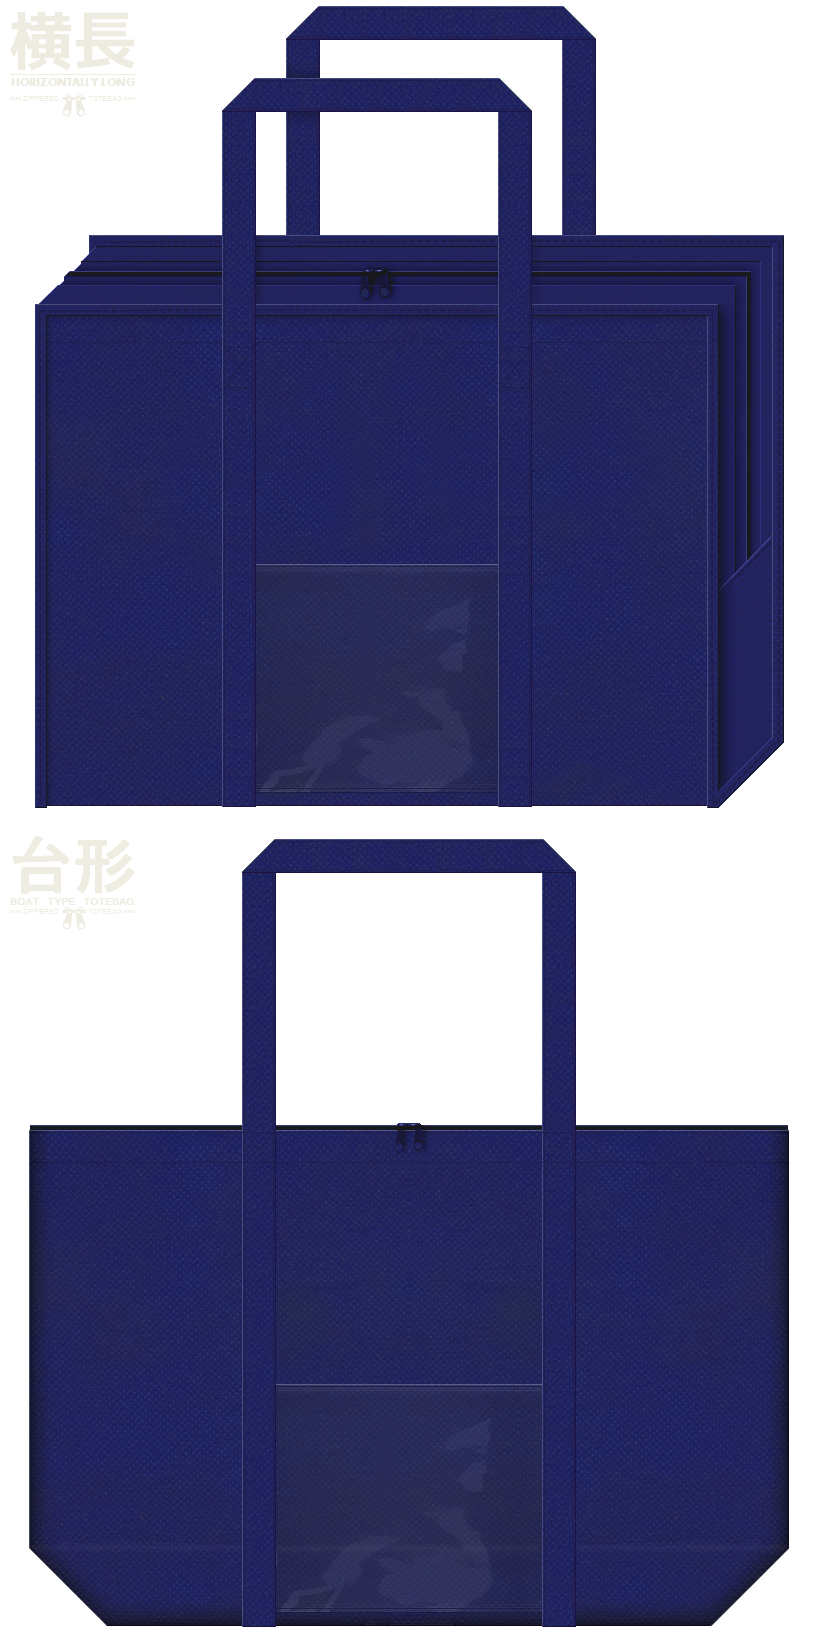 紺色の不織布ランドリーバッグ2種類